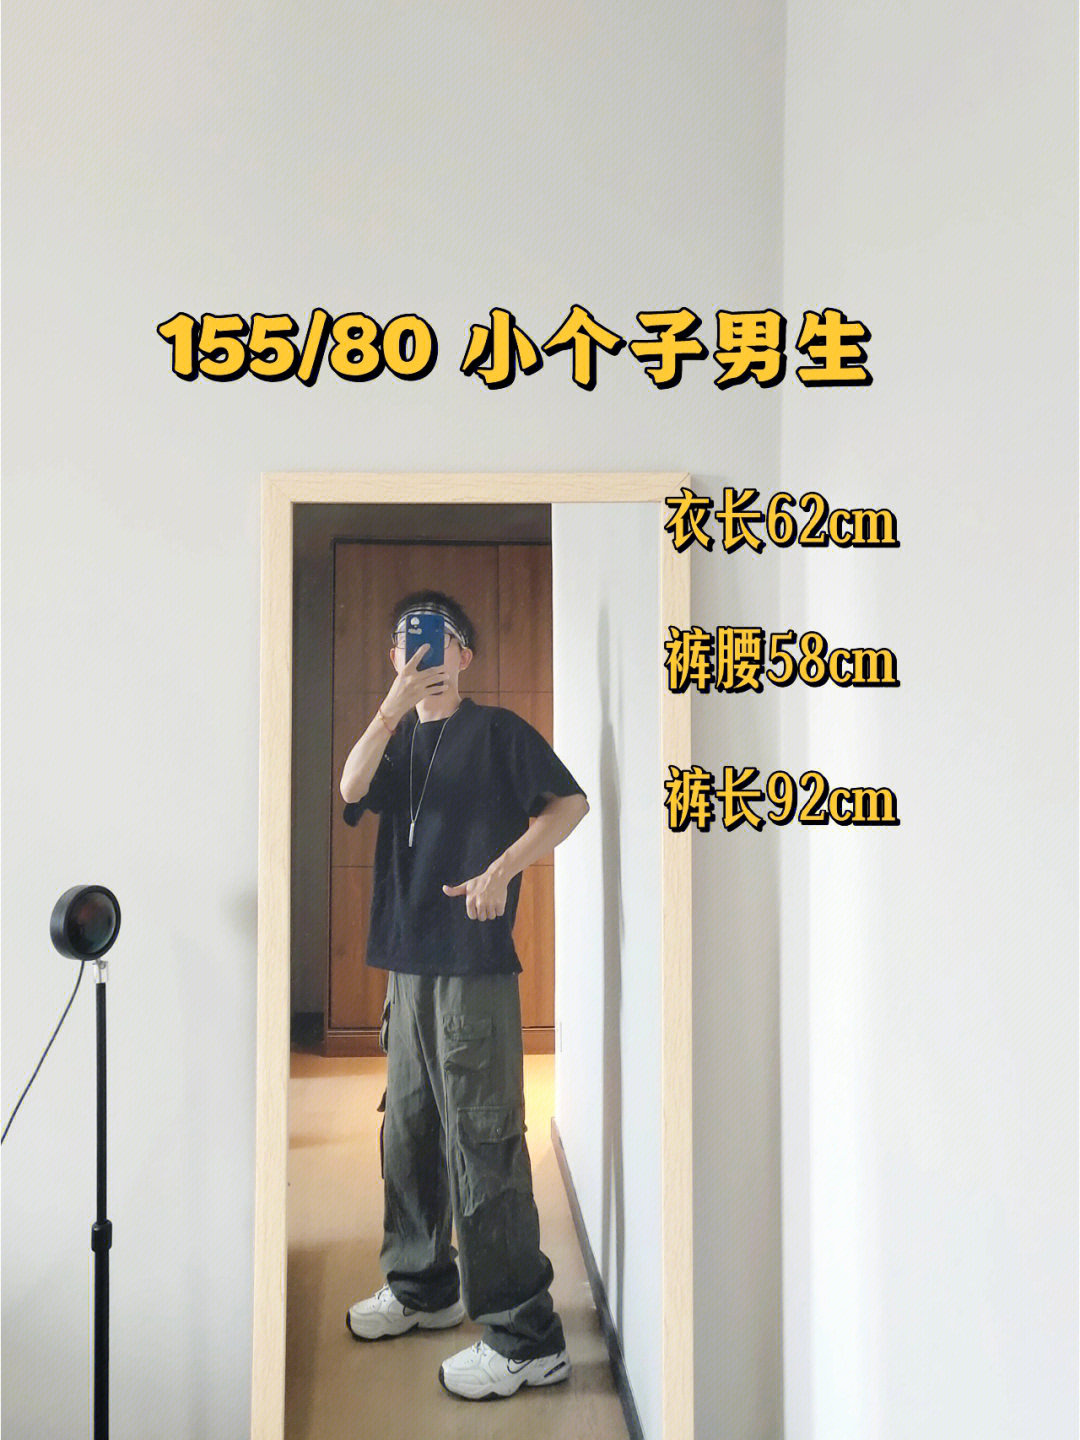 168cm男生完美体重图片